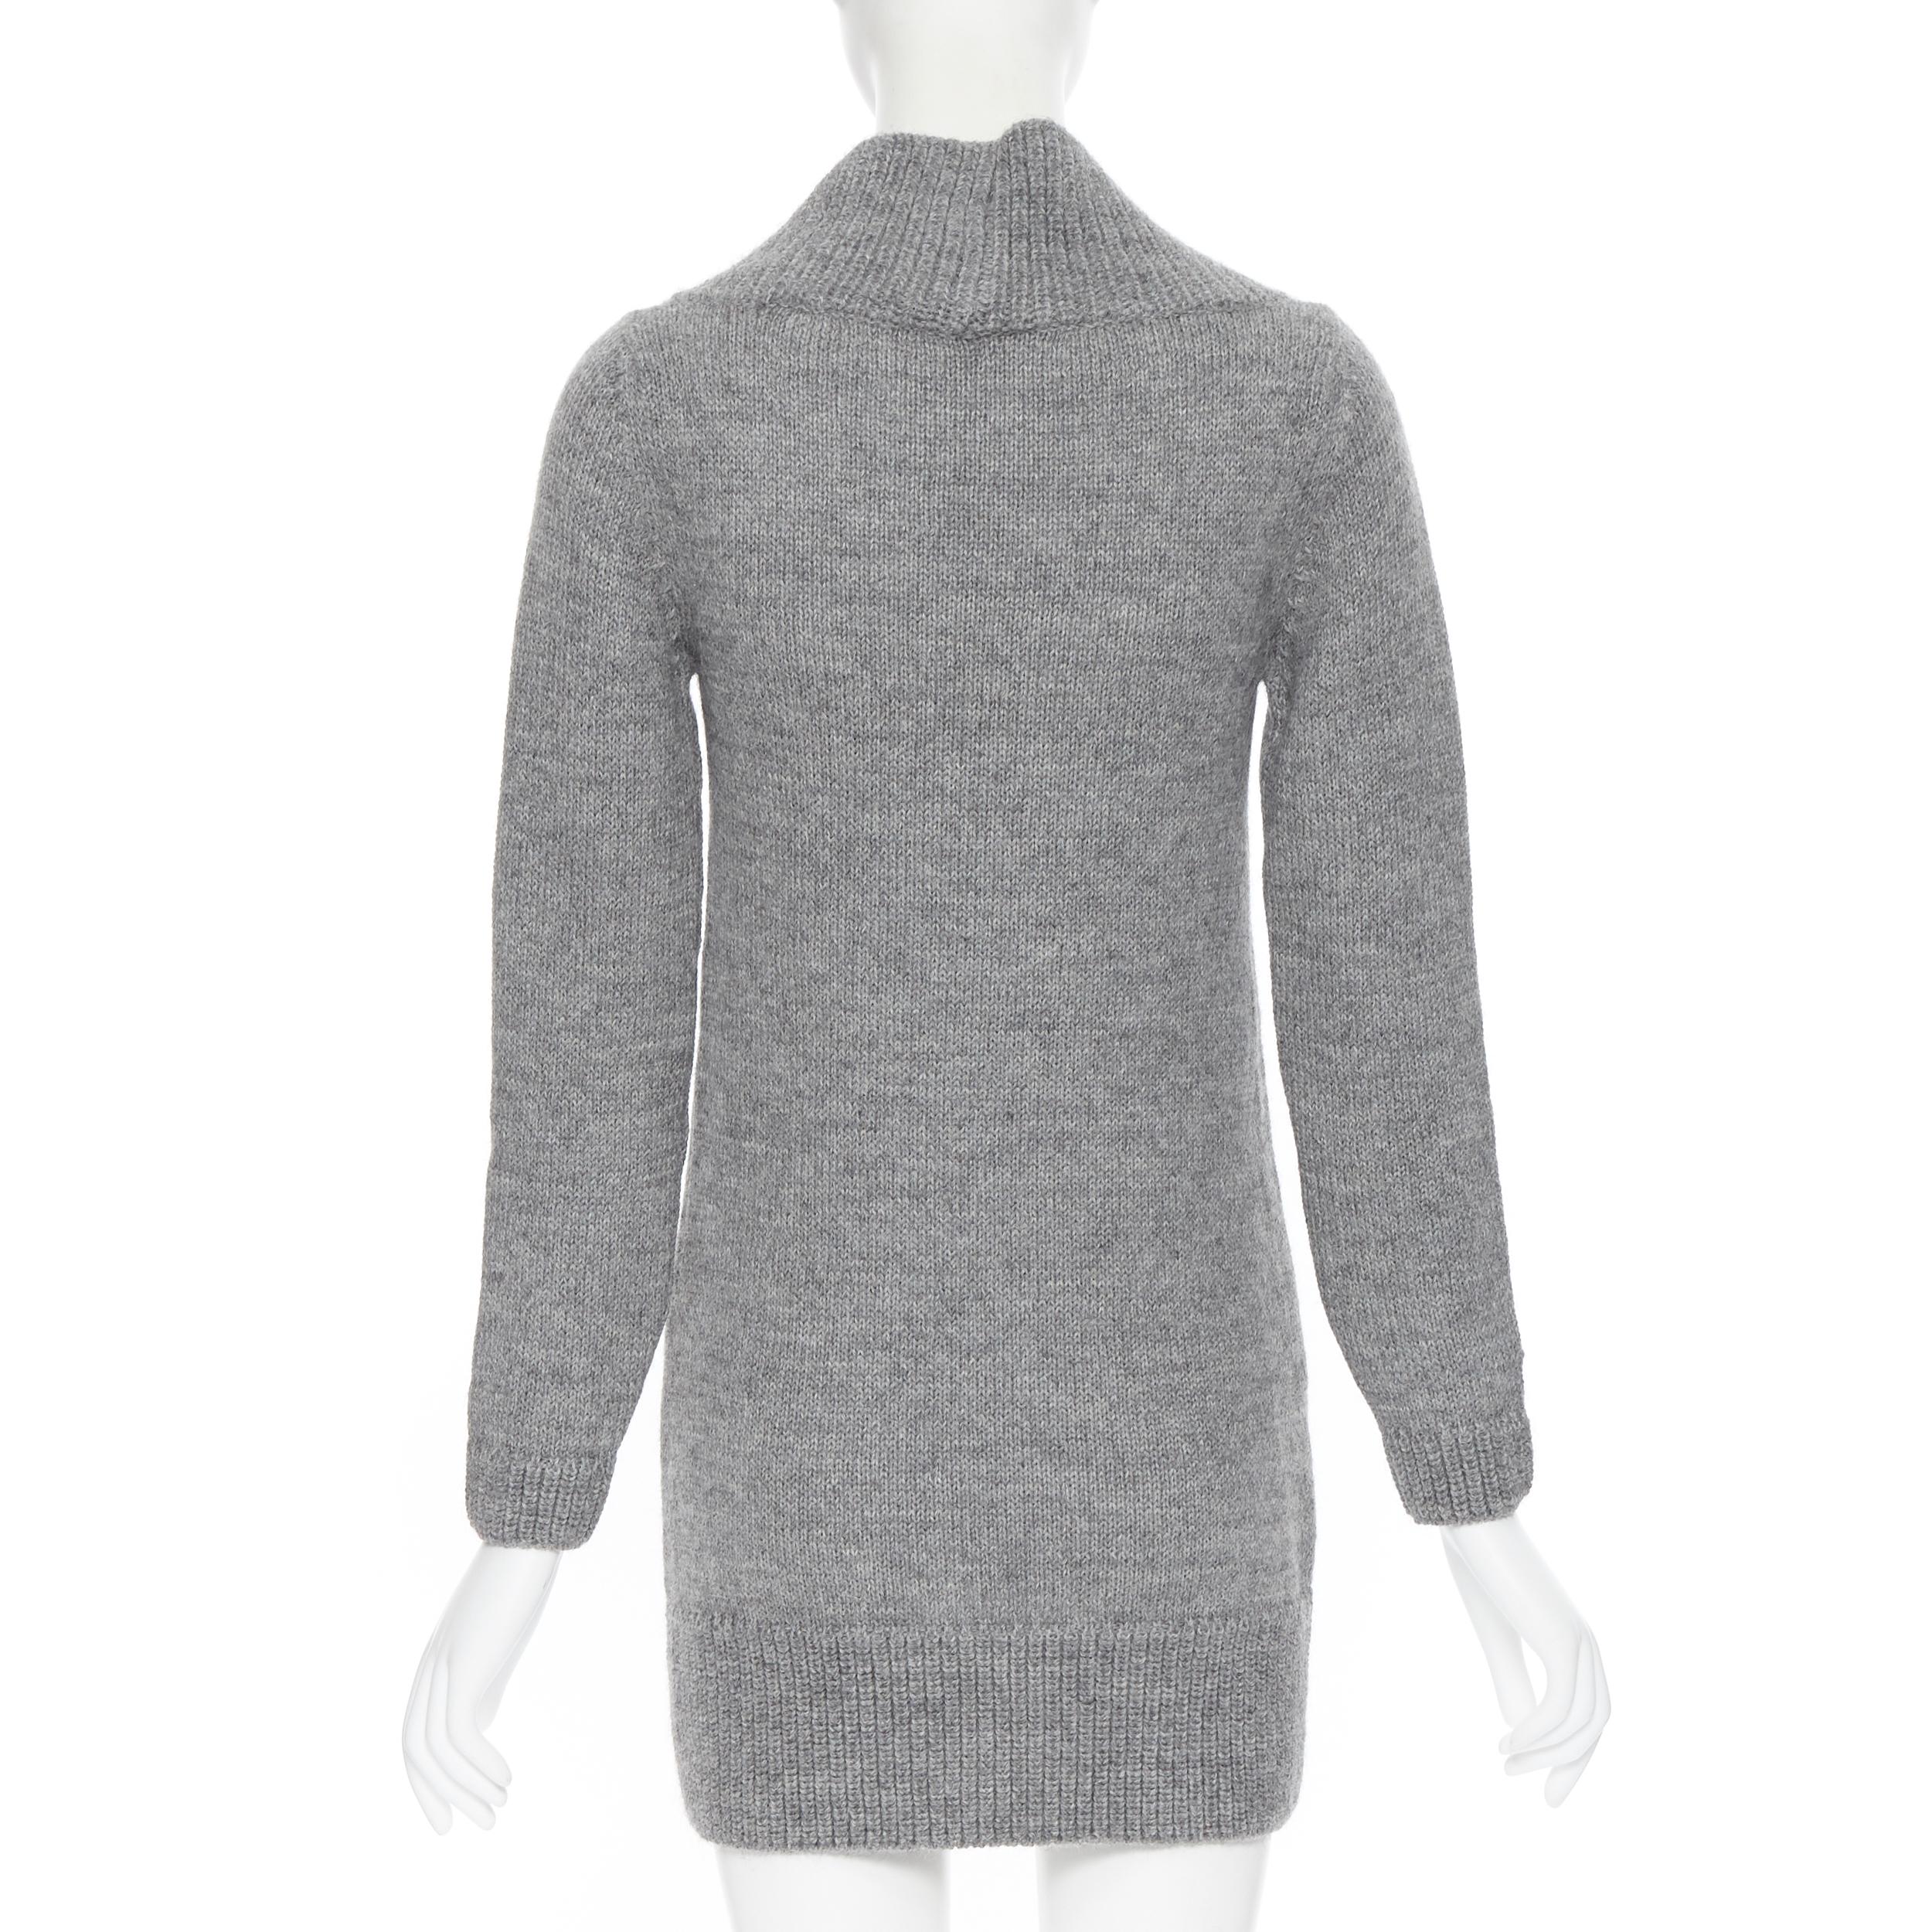 CHLOE alpaca wool grey open cowl neck long sleeve sweater dress XS 1